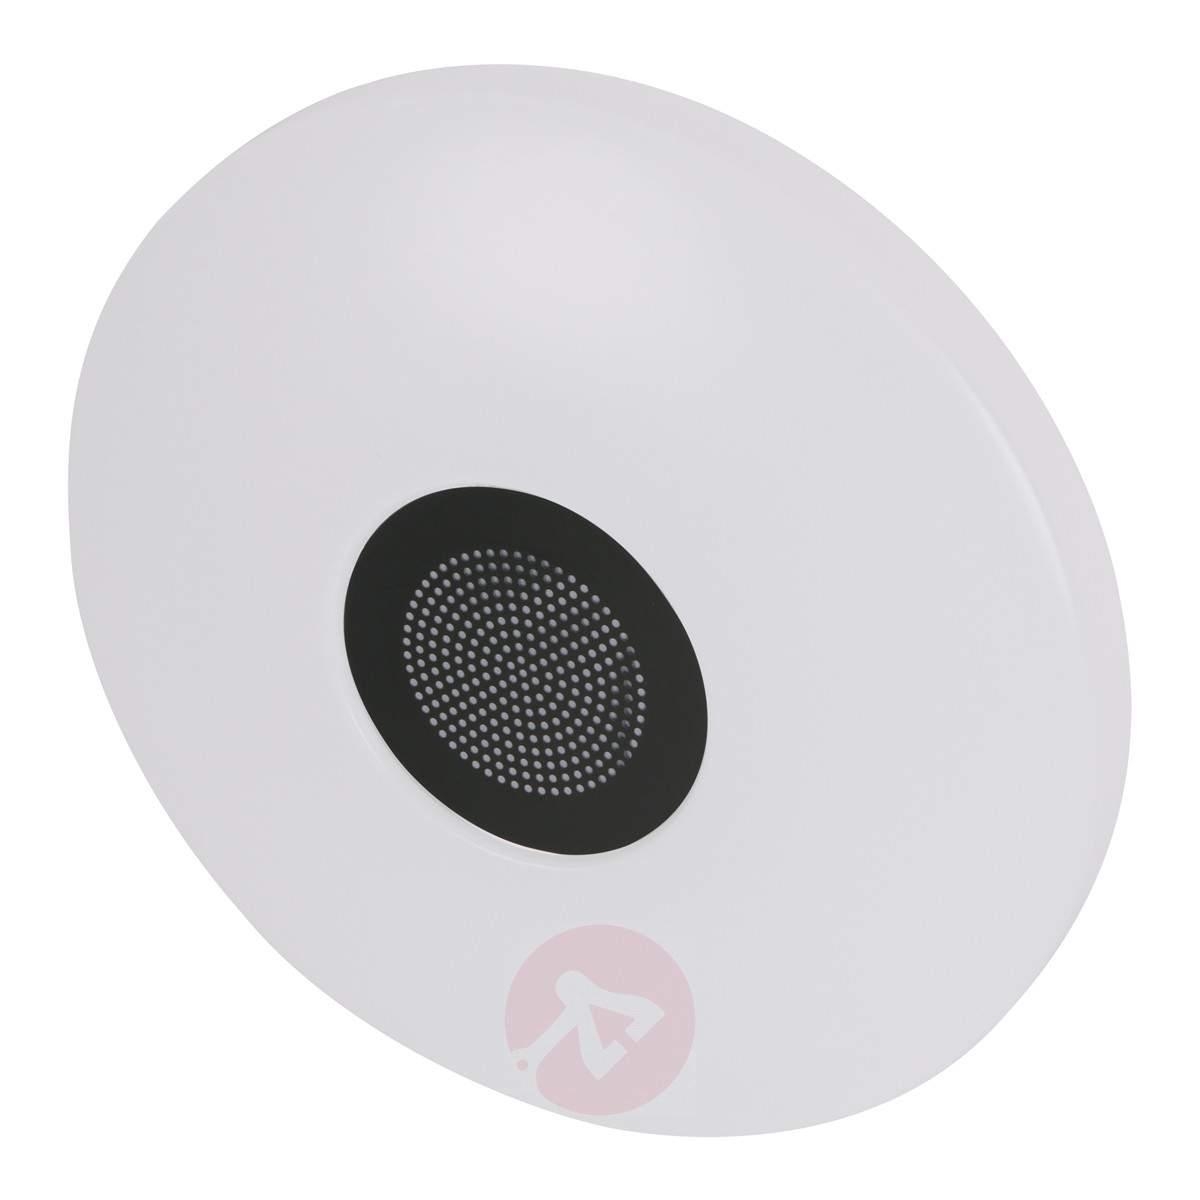 Bluetooth Ceiling Light Speakers